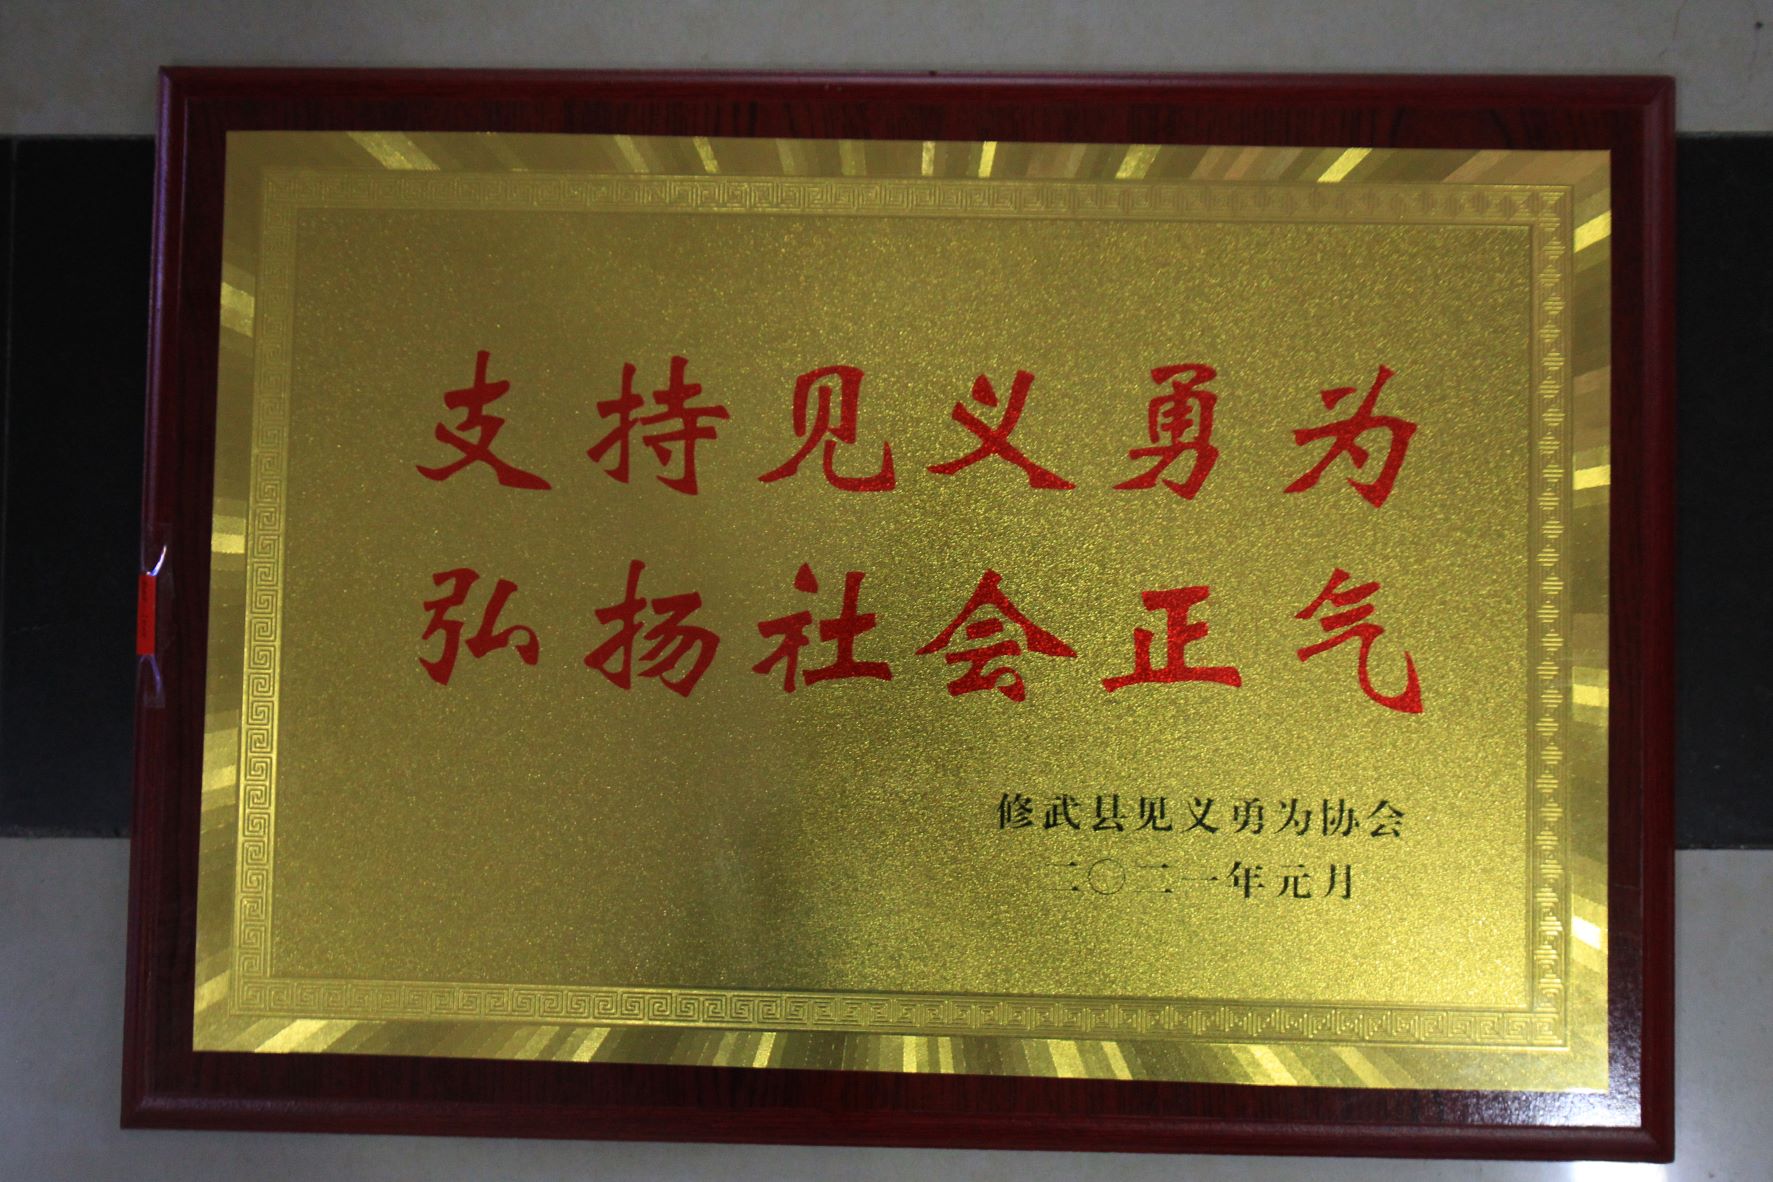 修武县见义勇为协会授予云台山景区“支持见义勇为弘扬社会正气”牌匾。